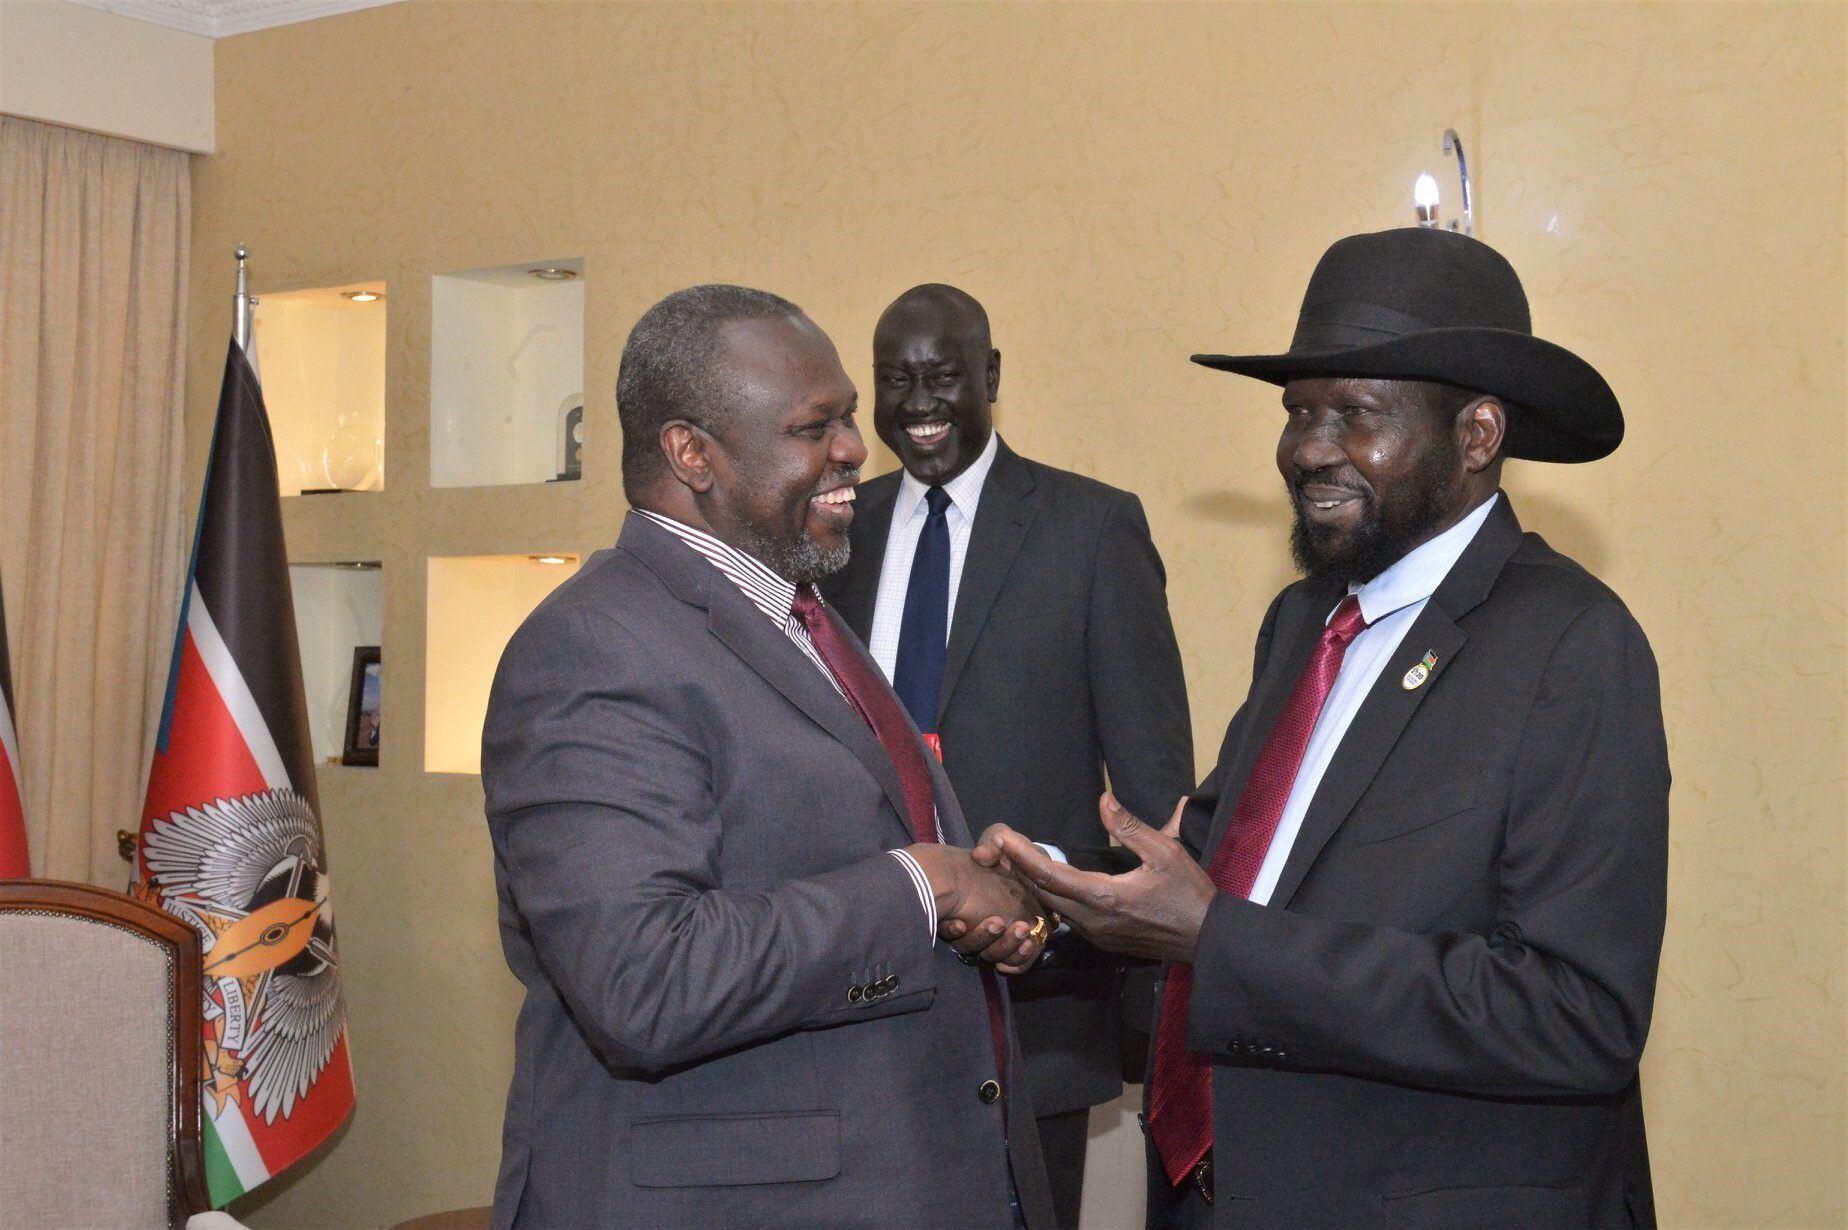 05-03-2020 Riek Machar, primer vicepresidente, y Salva Kiir, presidente de Sudán del Sur
POLITICA SUR DE SUDÁN INTERNACIONAL
PRESIDENCIA DE SUDÁN DEL SUR
